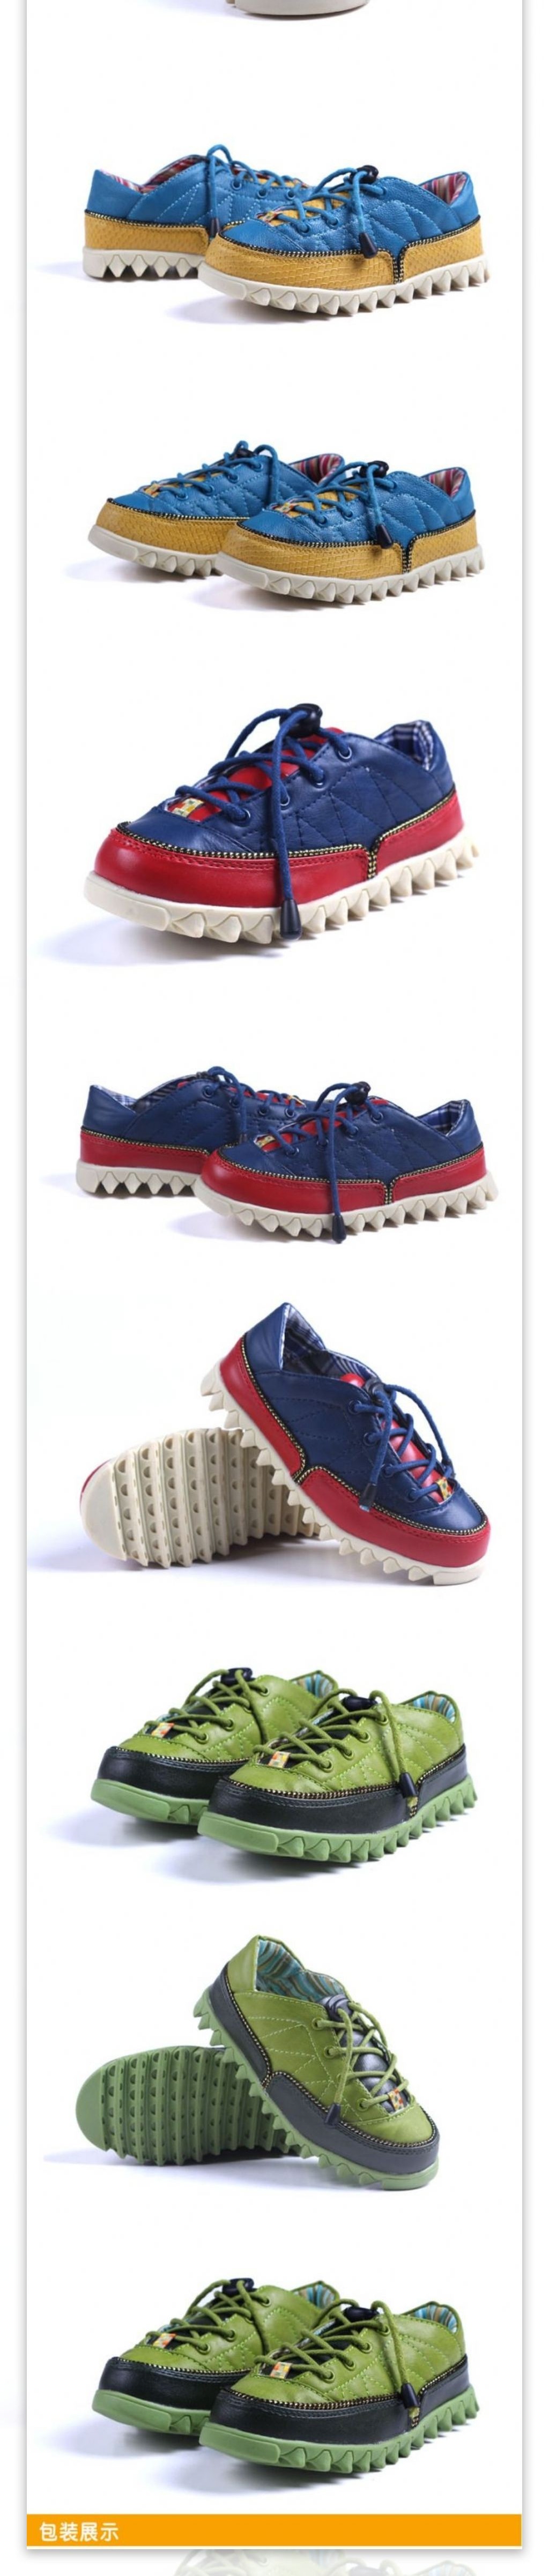 淘宝素材PSD分层高清描述模板儿童运动鞋